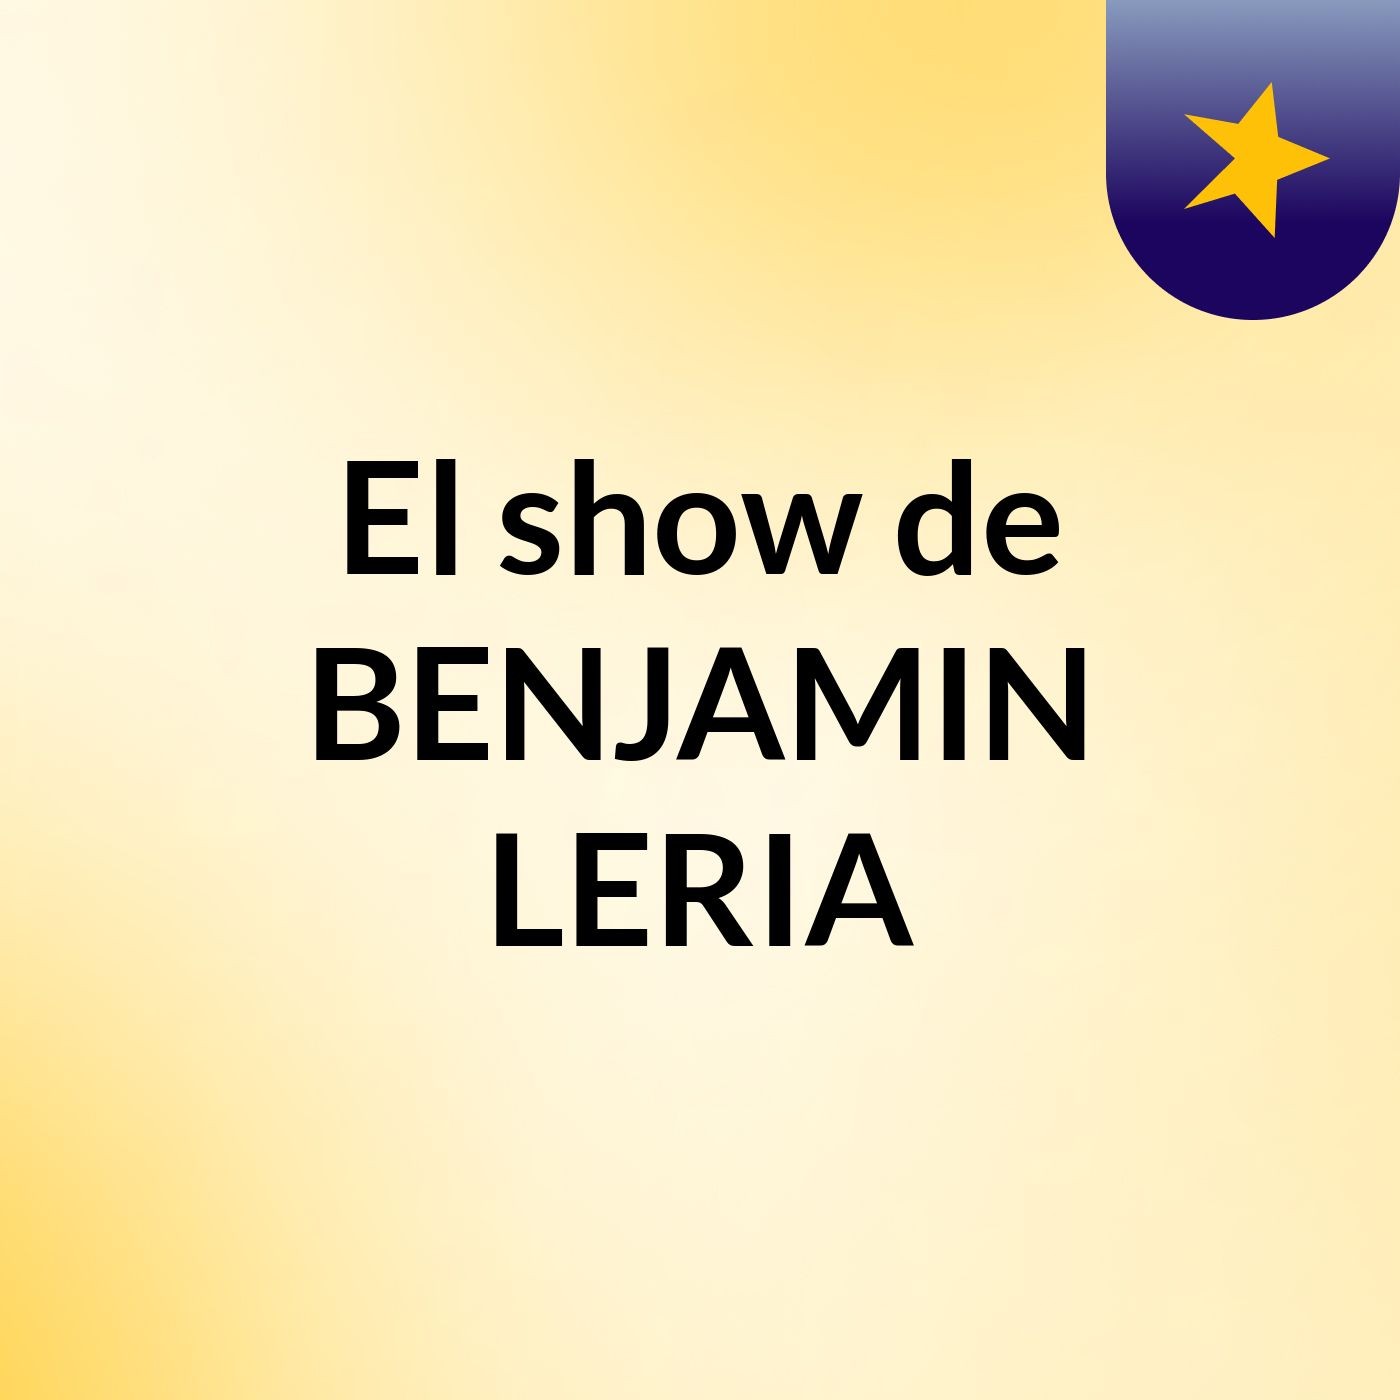 Episodio 7 - El show de BENJAMIN LERIA